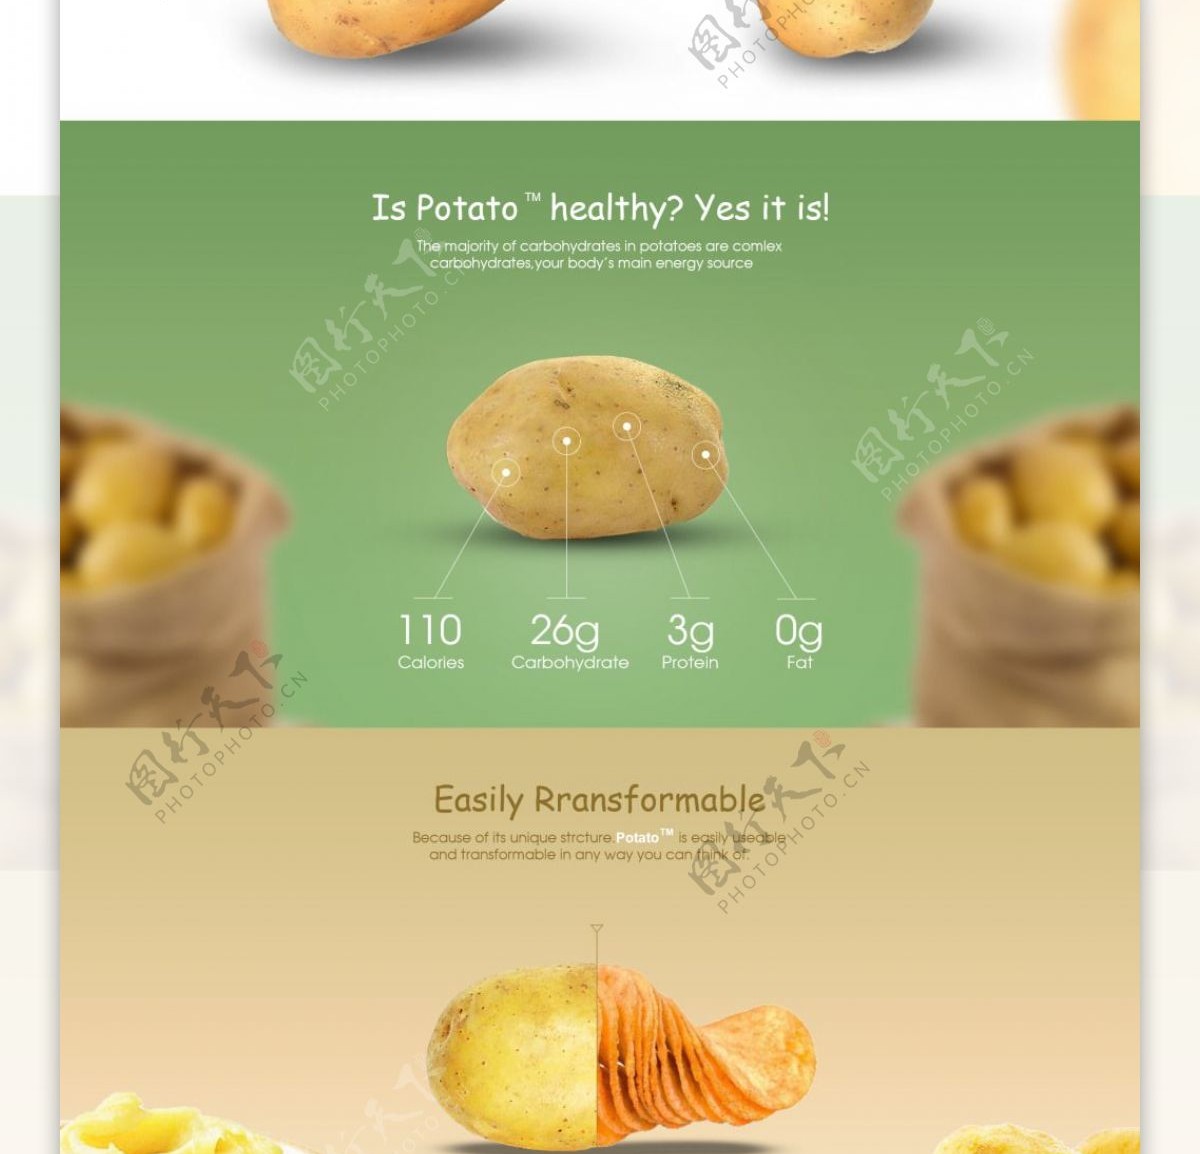 马铃薯淘宝网页设计